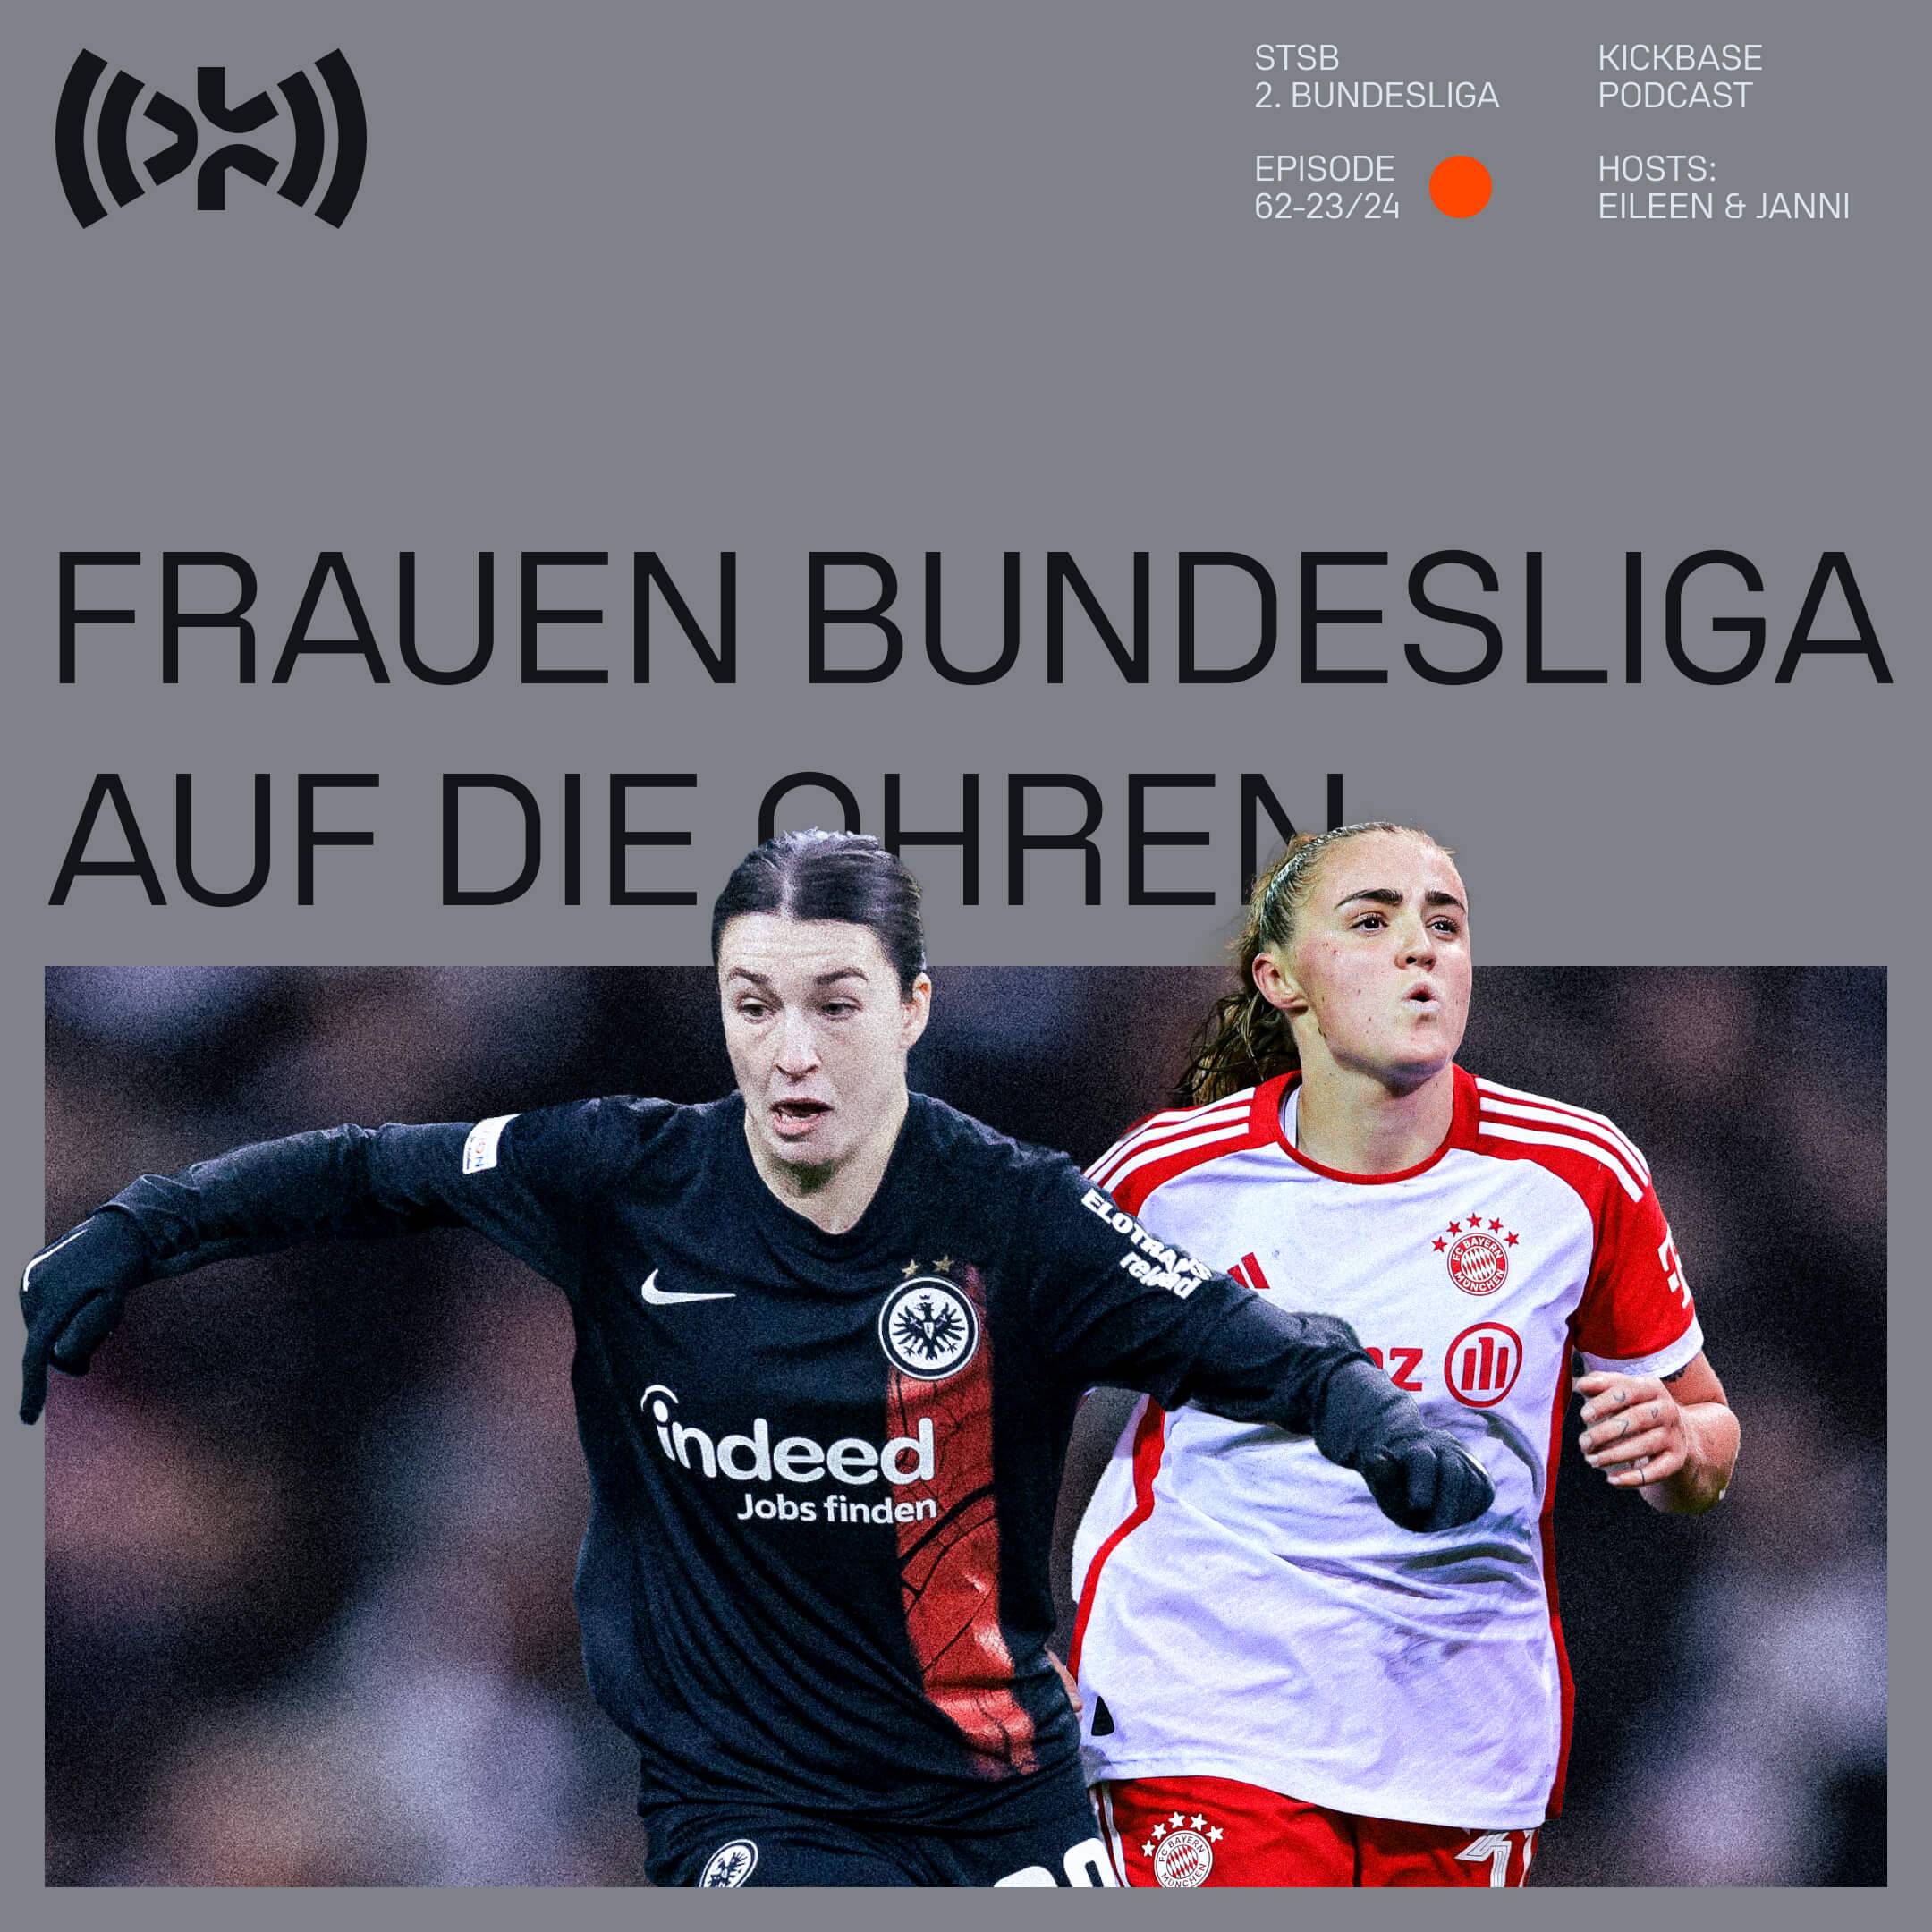 Frauen Bundesliga auf die Ohren